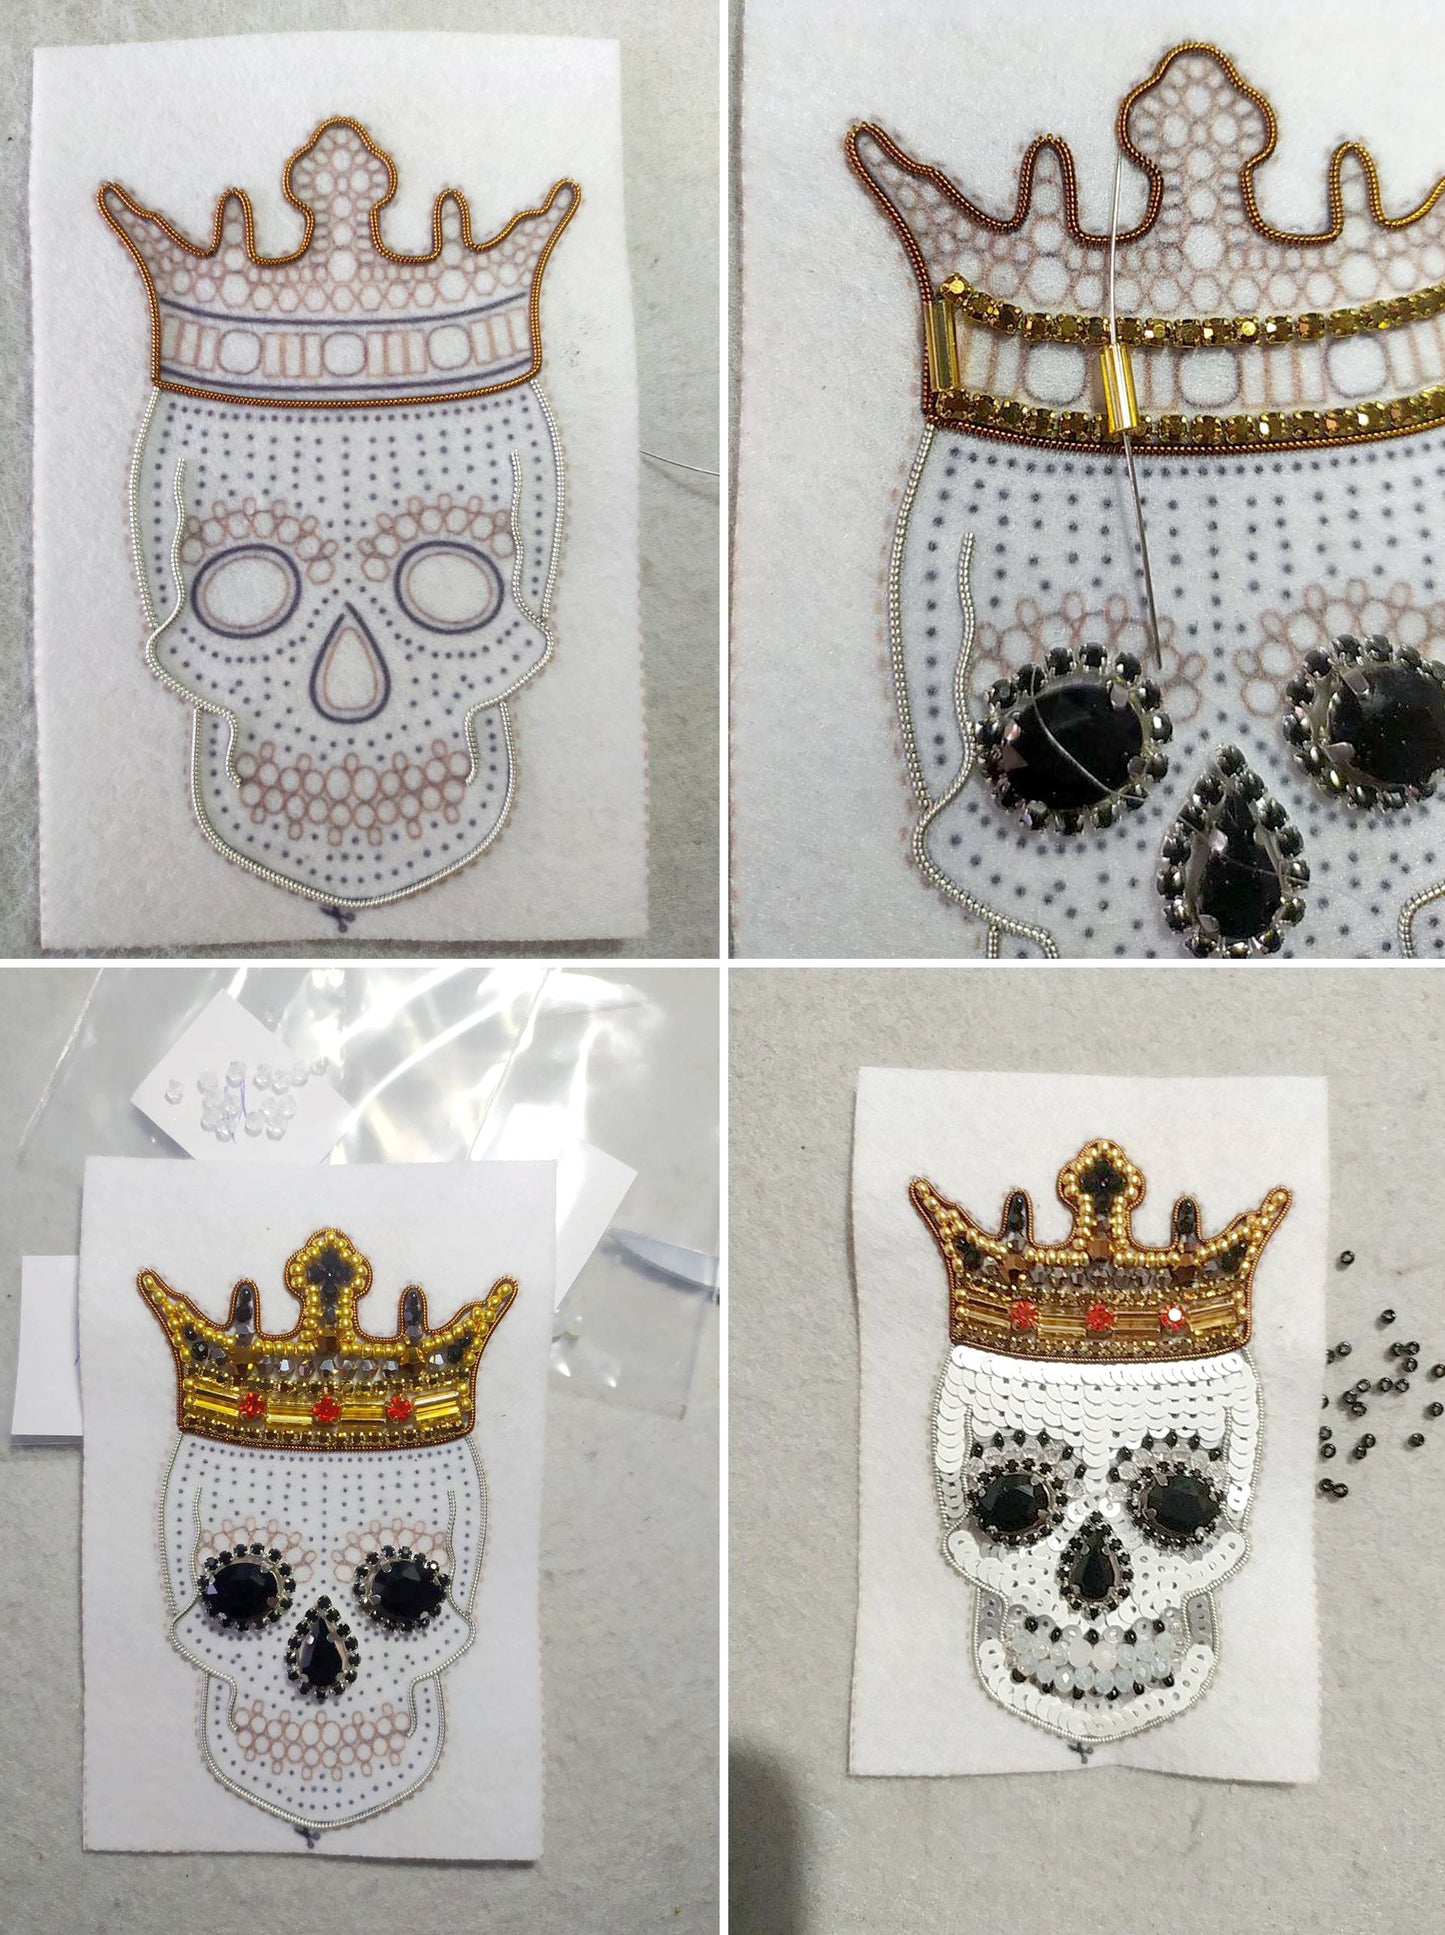 Skull Bead embroidery kit. Seed Bead Brooch kit. DIY Craft kit. Beading kit. Needlework beading. Handmade Jewelry Making Kit, Los Muertos